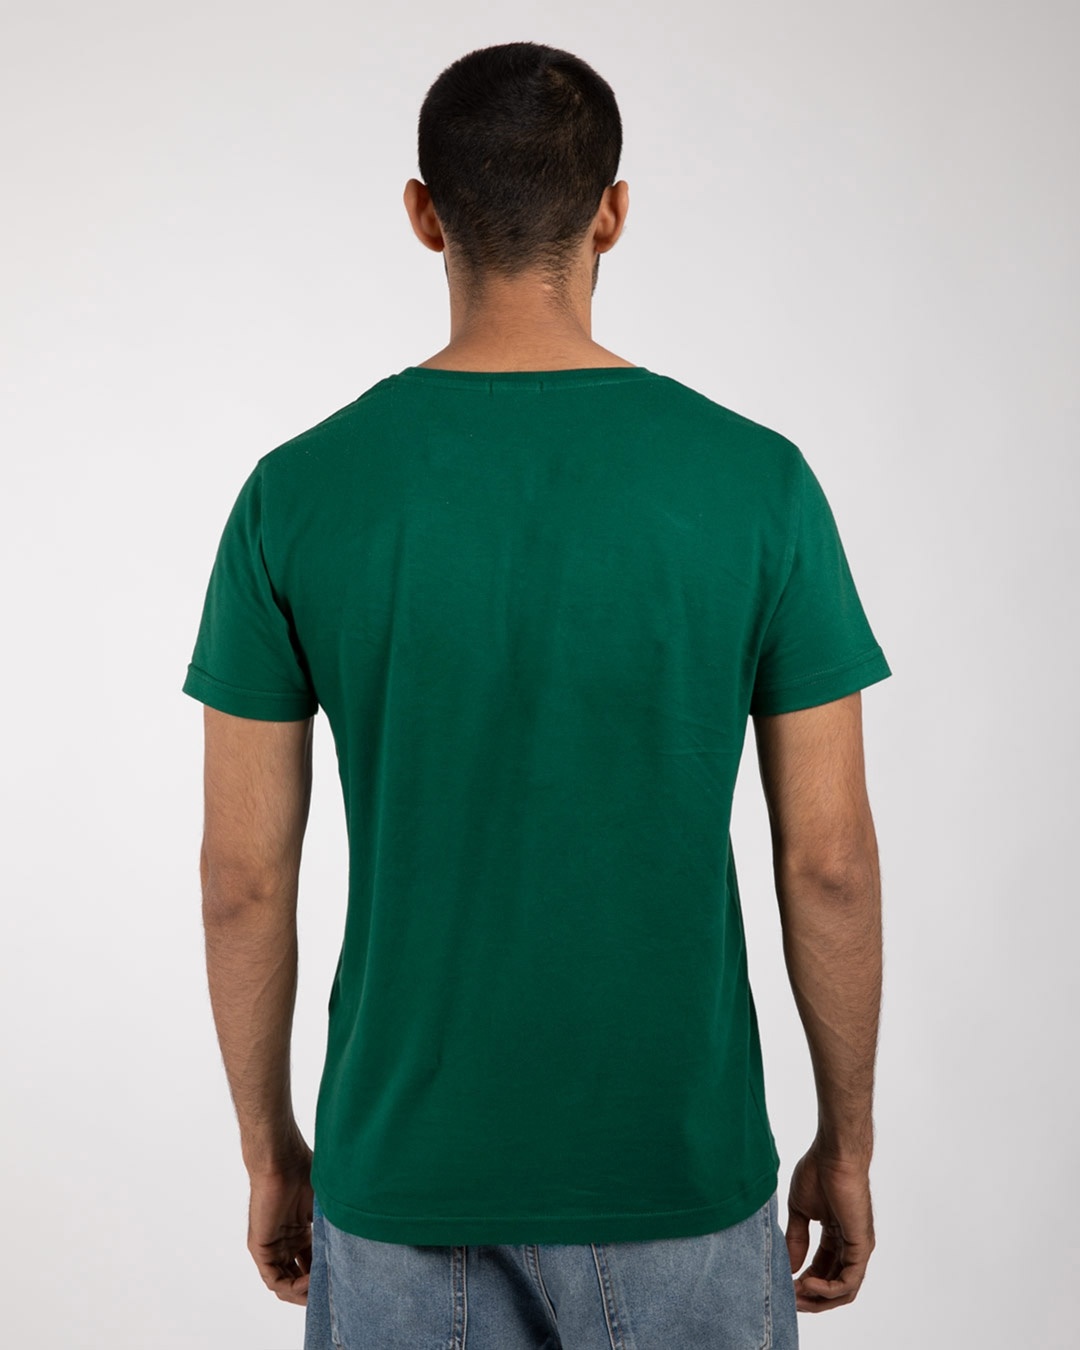 Shop Men's Plain Half Sleeve T-shirt Pack of 2(White & Green)